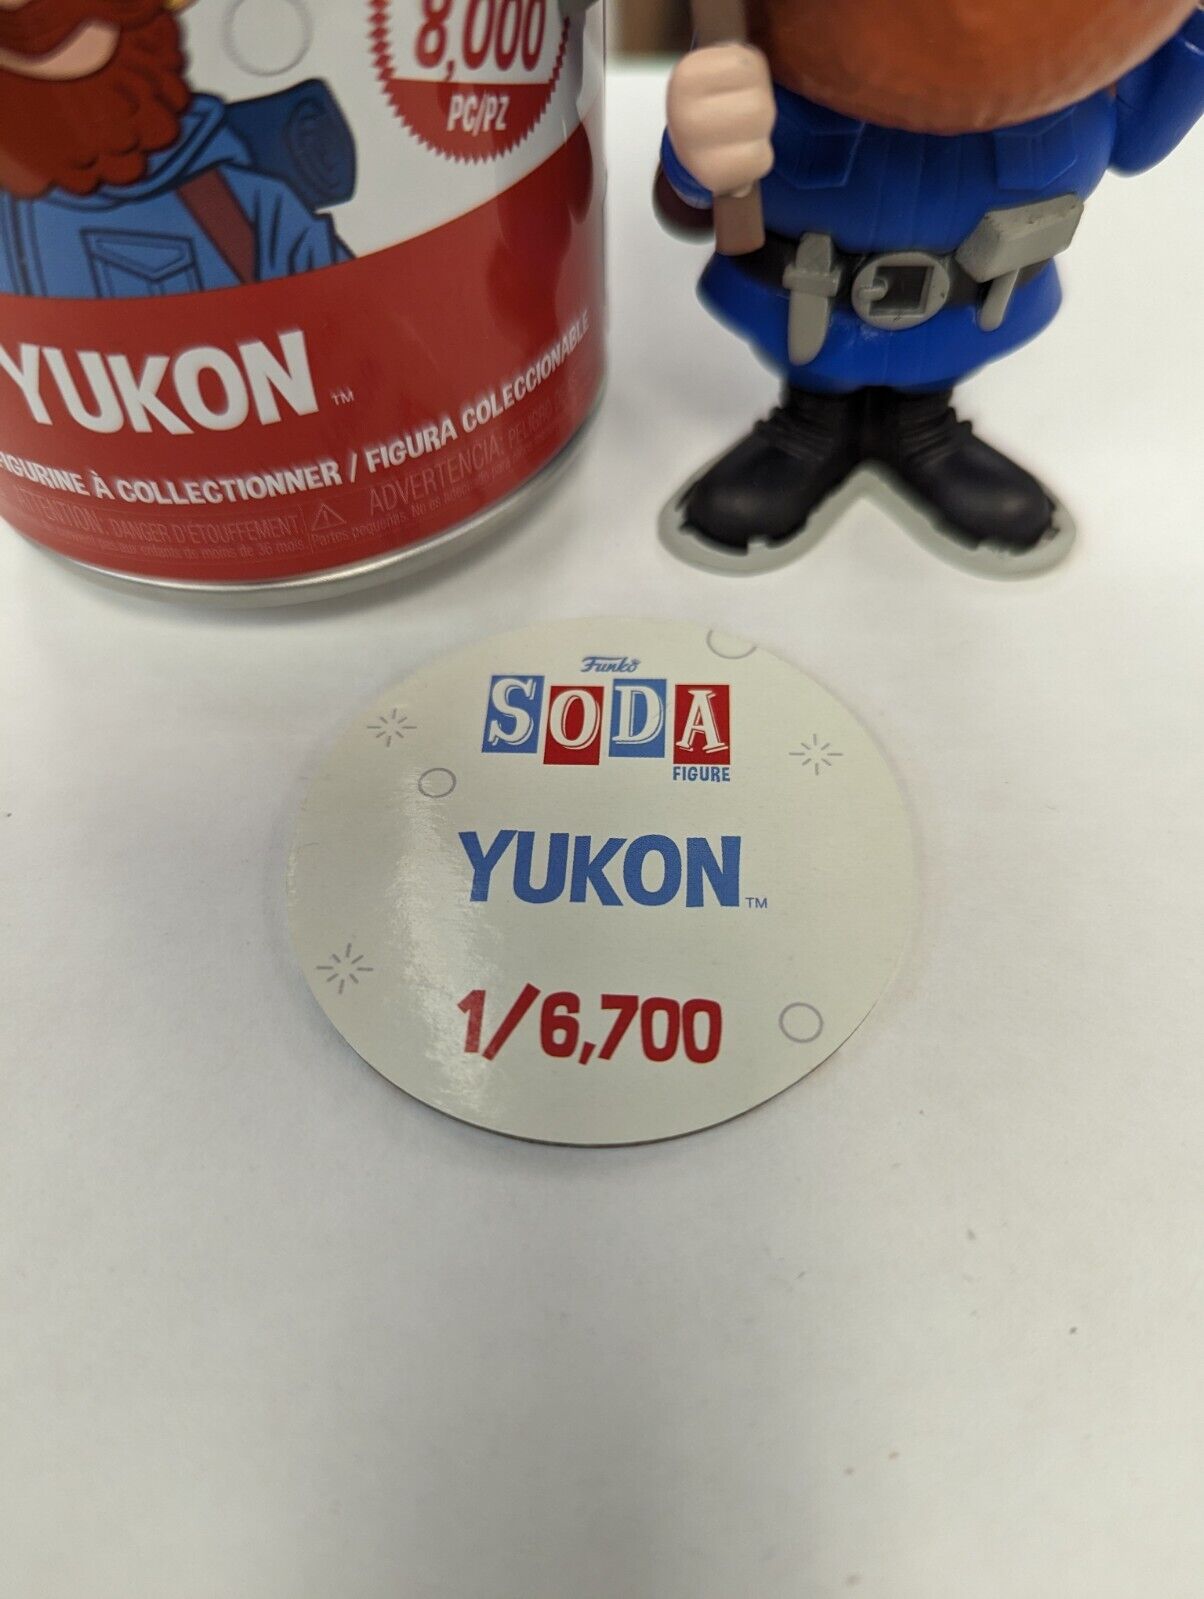 Funko Soda Yukon 1/6700